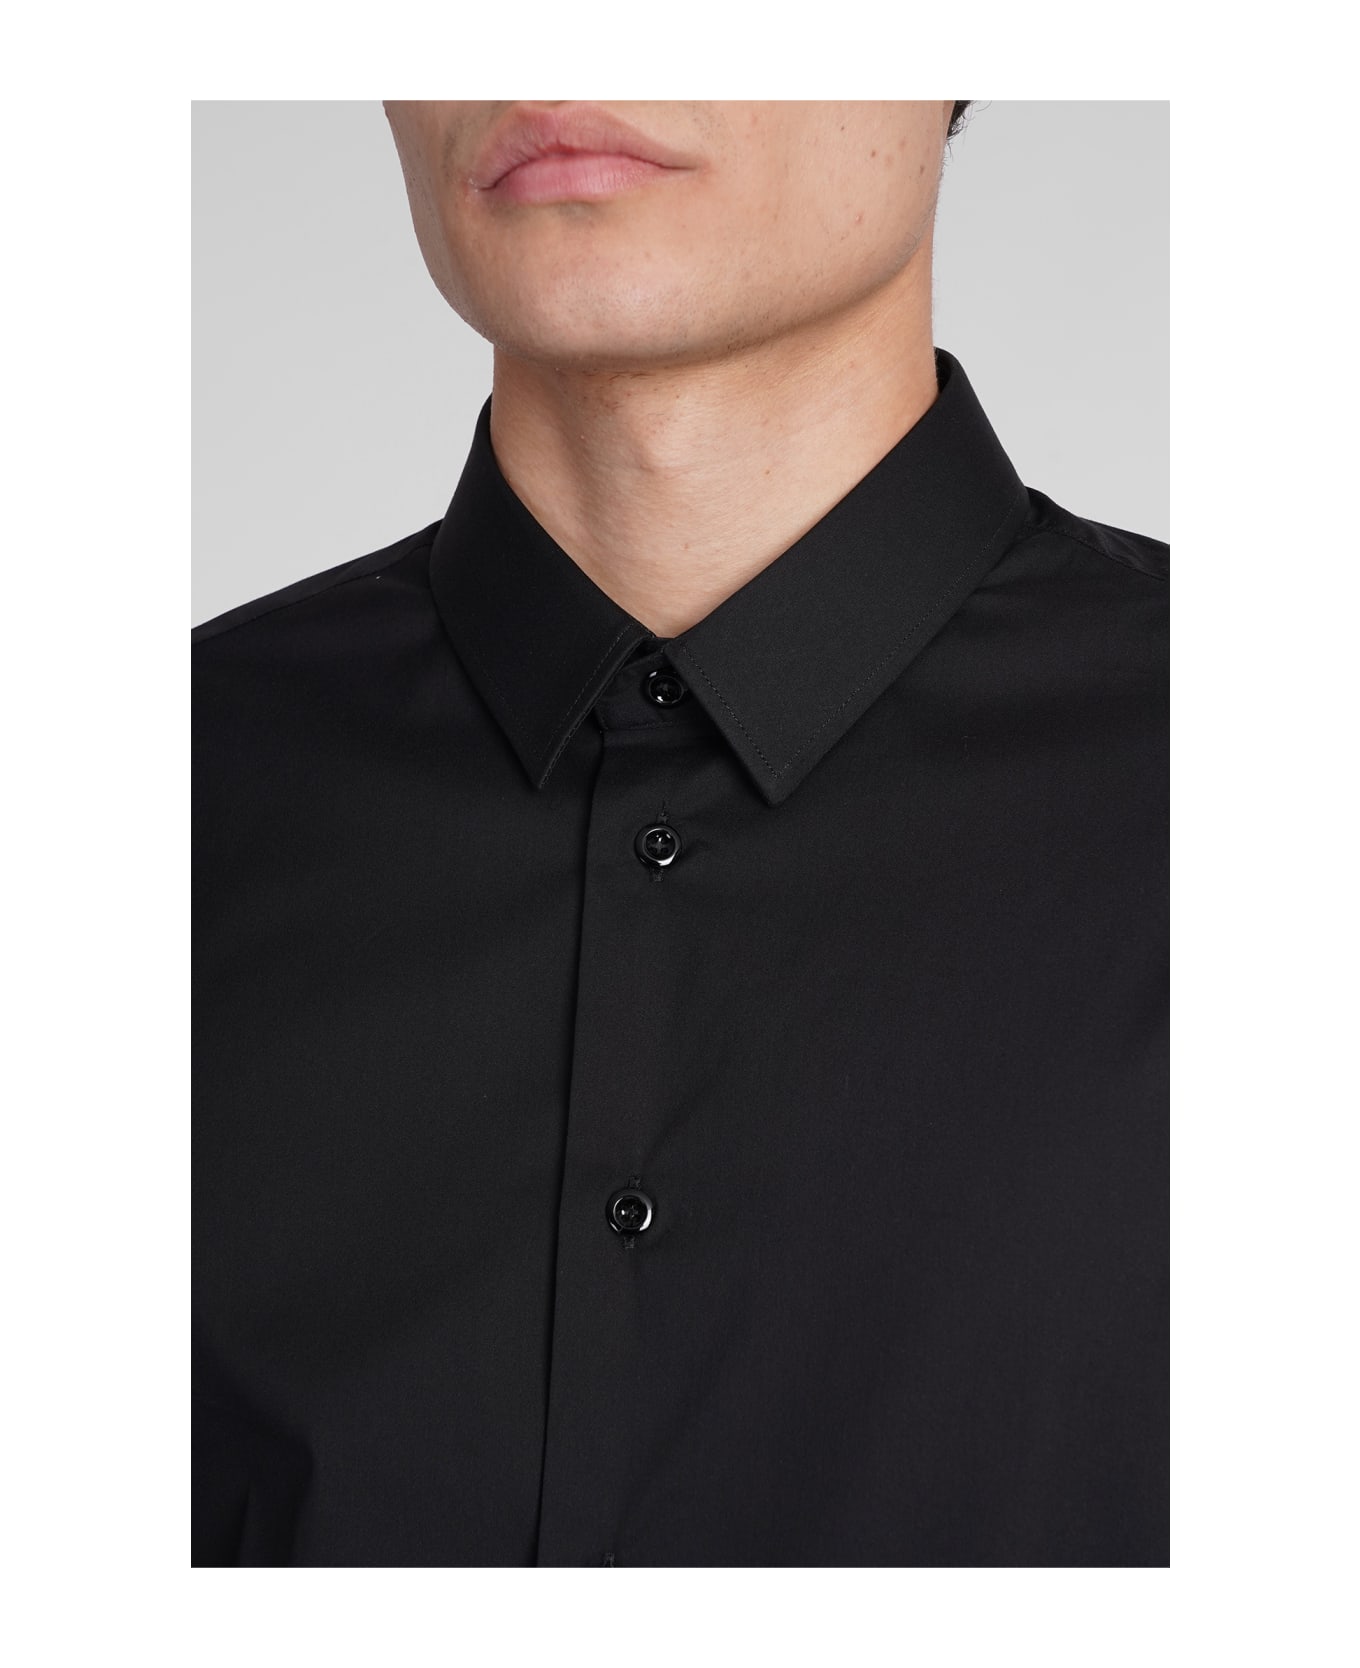 Emporio Armani Shirt In Black Cotton - black シャツ